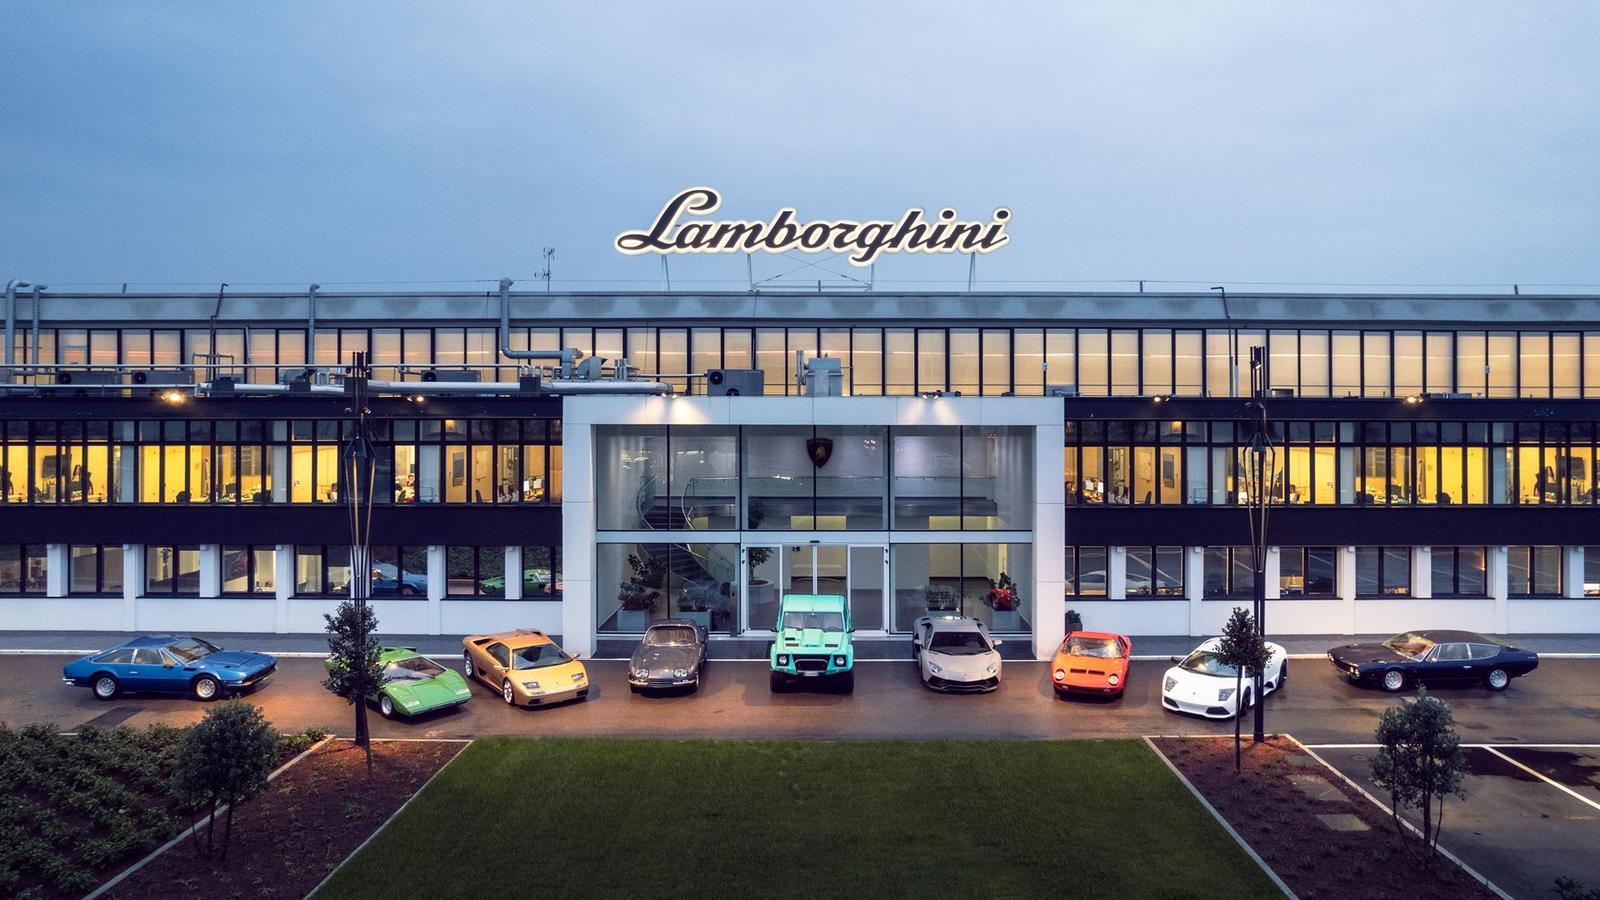 Lamborghini's corporate contract renewal